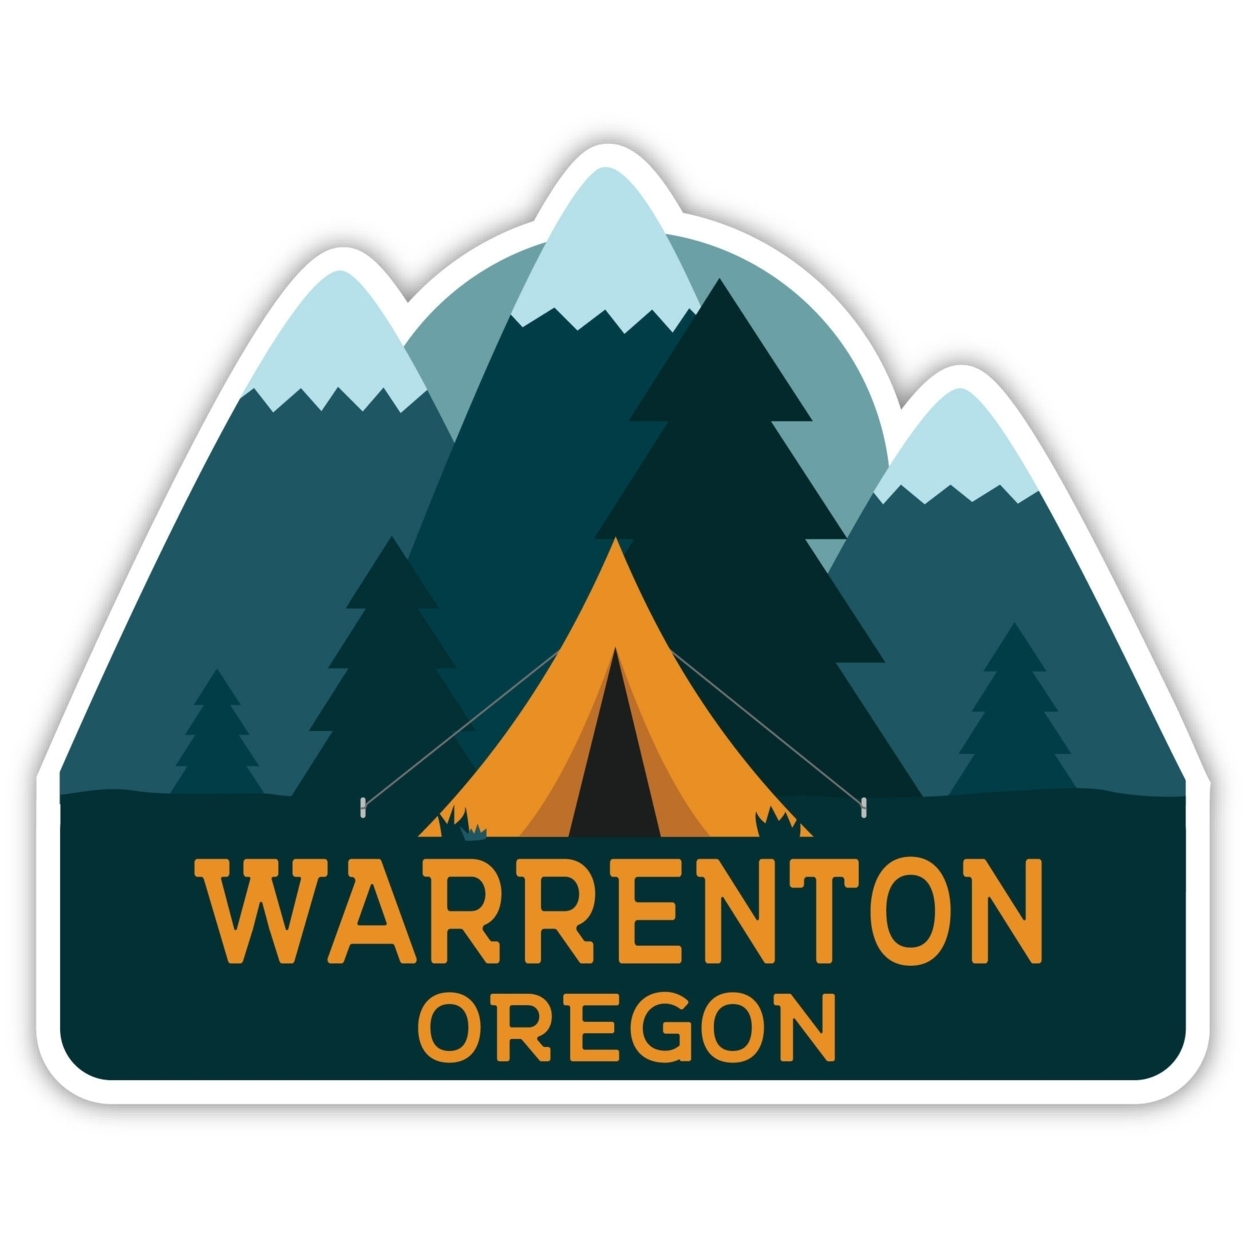 Warrenton Oregon Souvenir Decorative Stickers (Choose Theme And Size) - Single Unit, 4-Inch, Tent